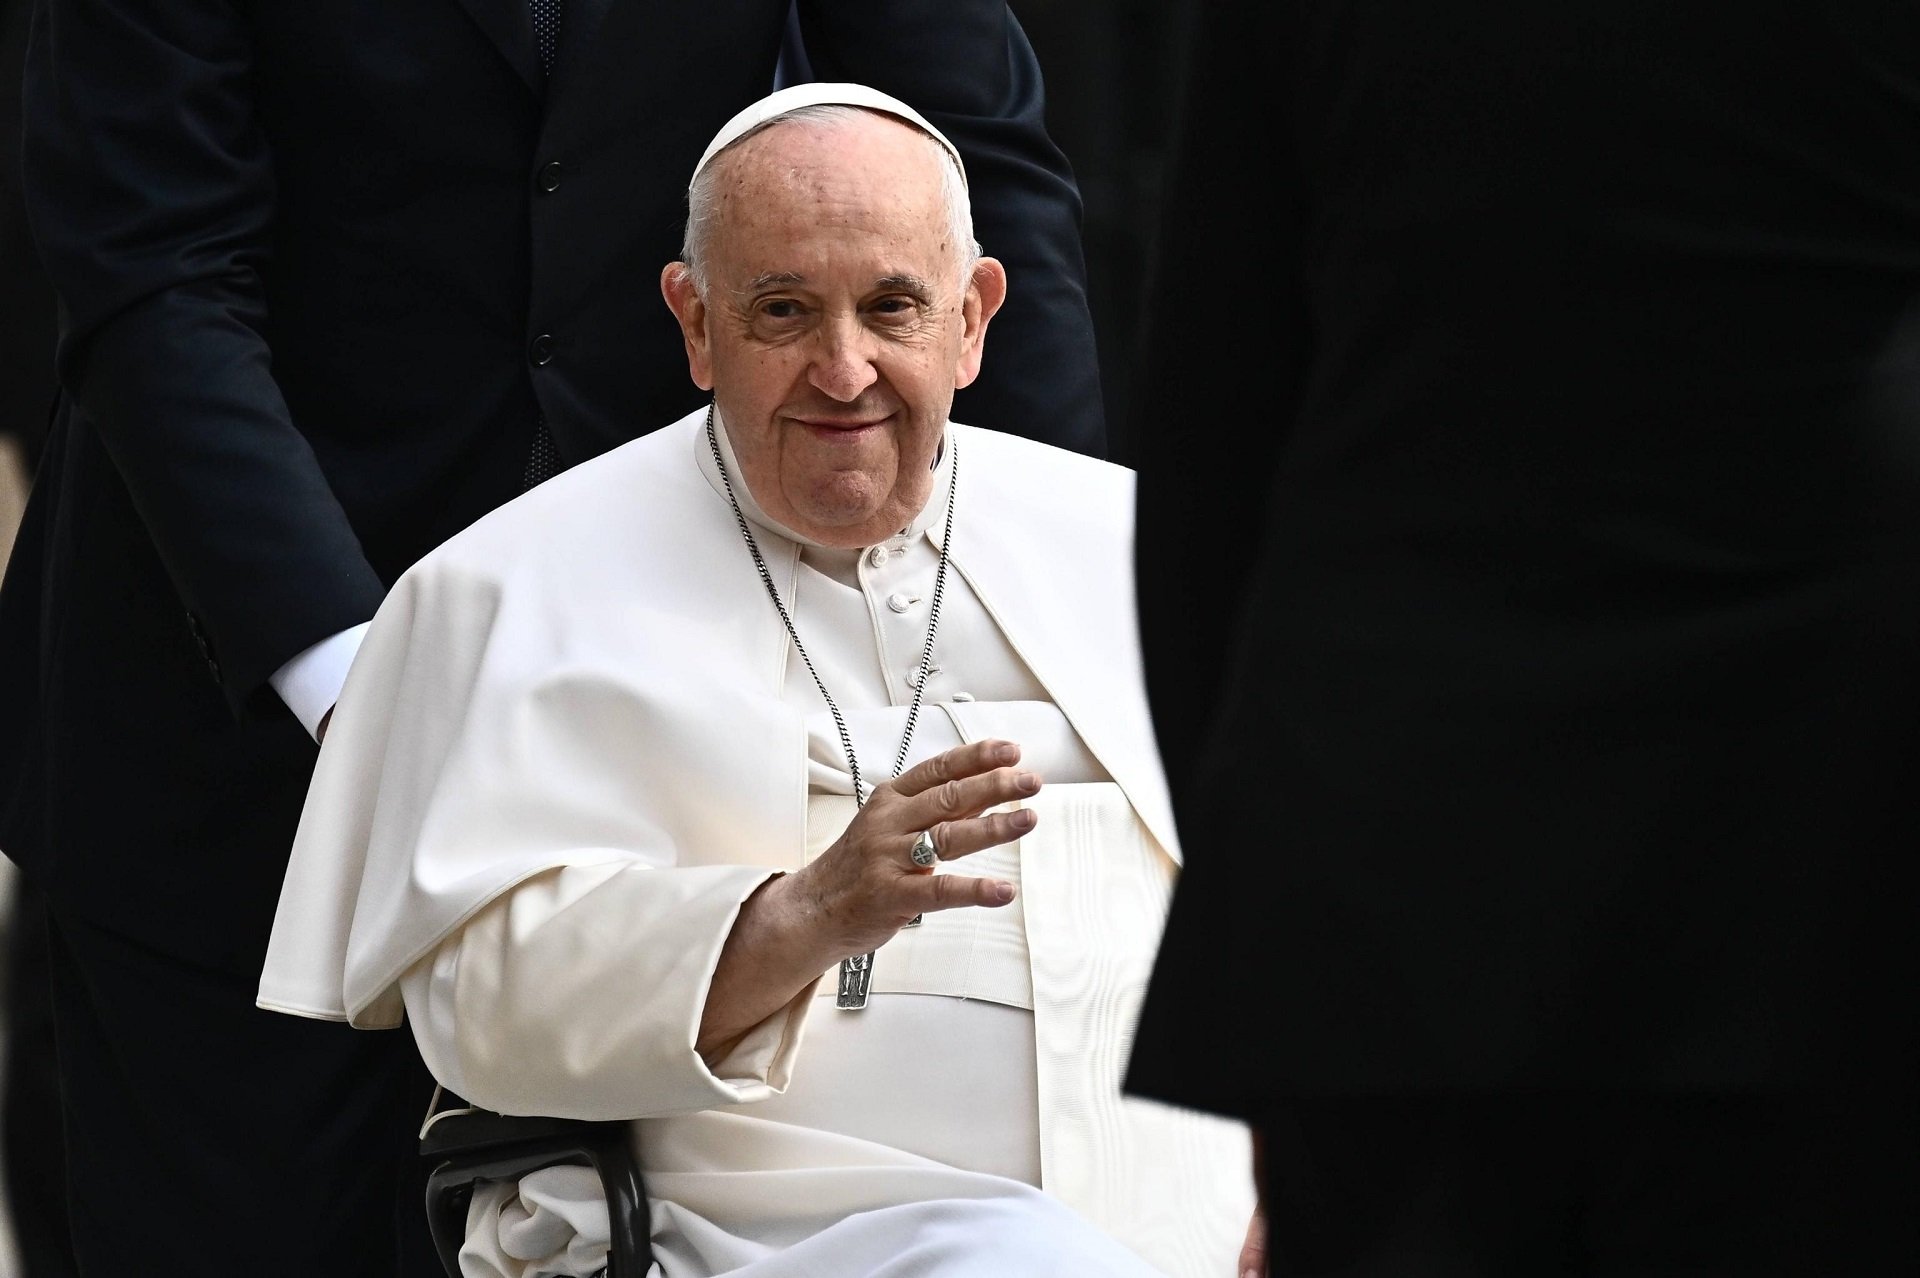 Los ultras del Vaticano cargan contra el Papa por permitir bautizar a personas trans: "Hereje"